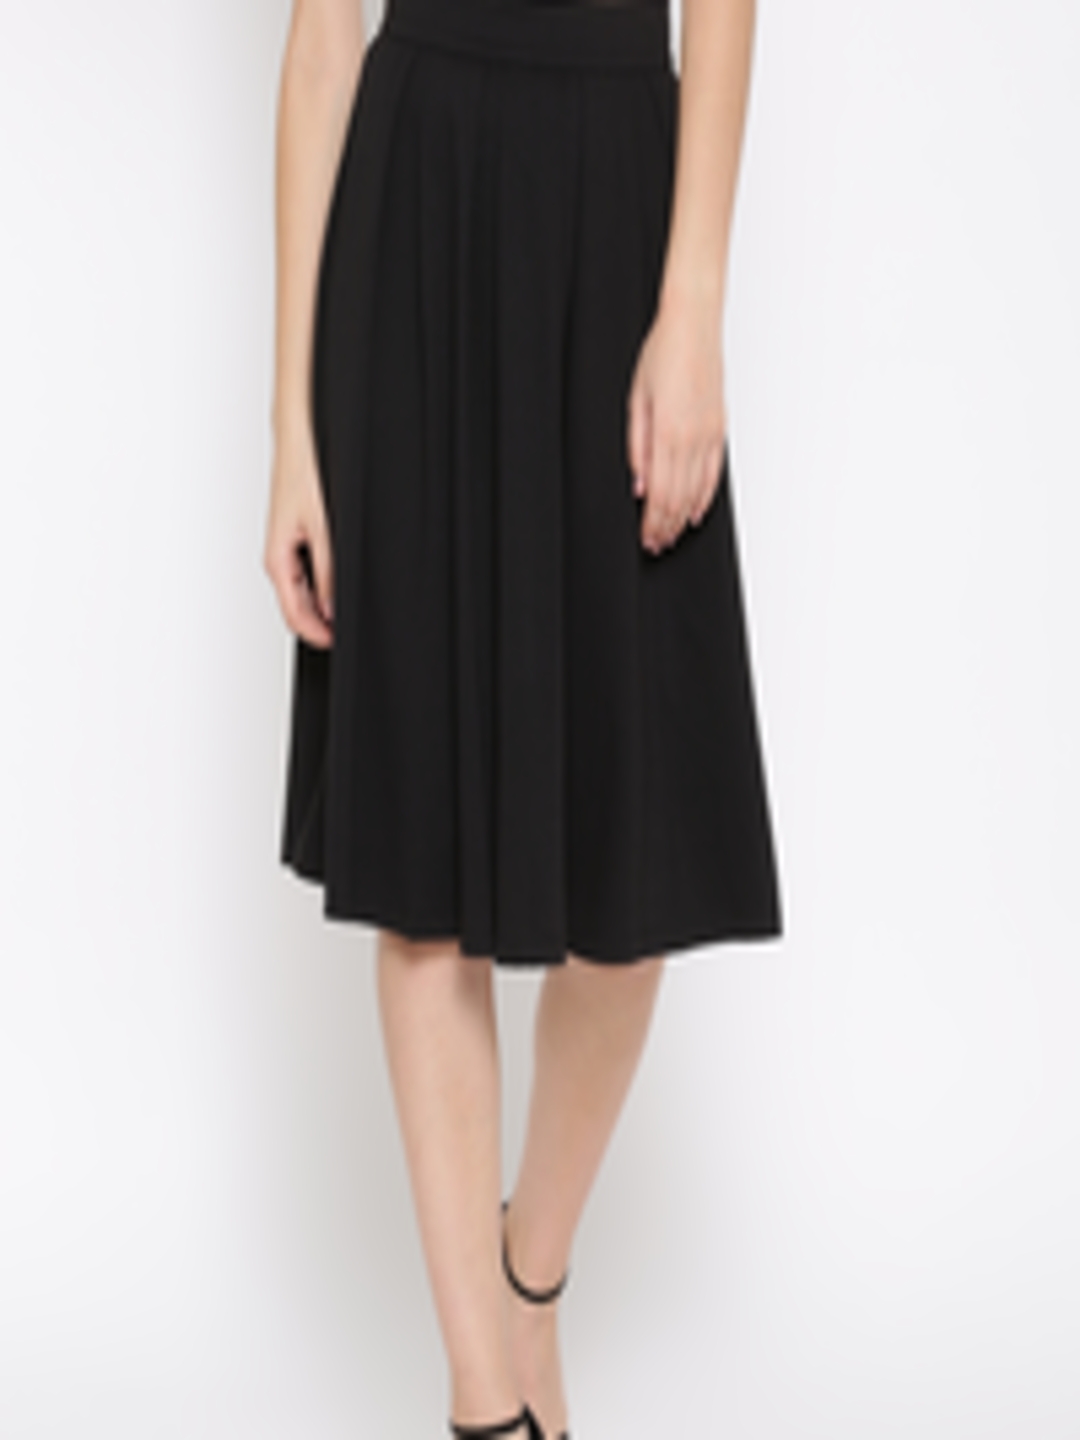 Buy FOREVER 21 Black Pleated Skirt - Skirts for Women 1552606 | Myntra